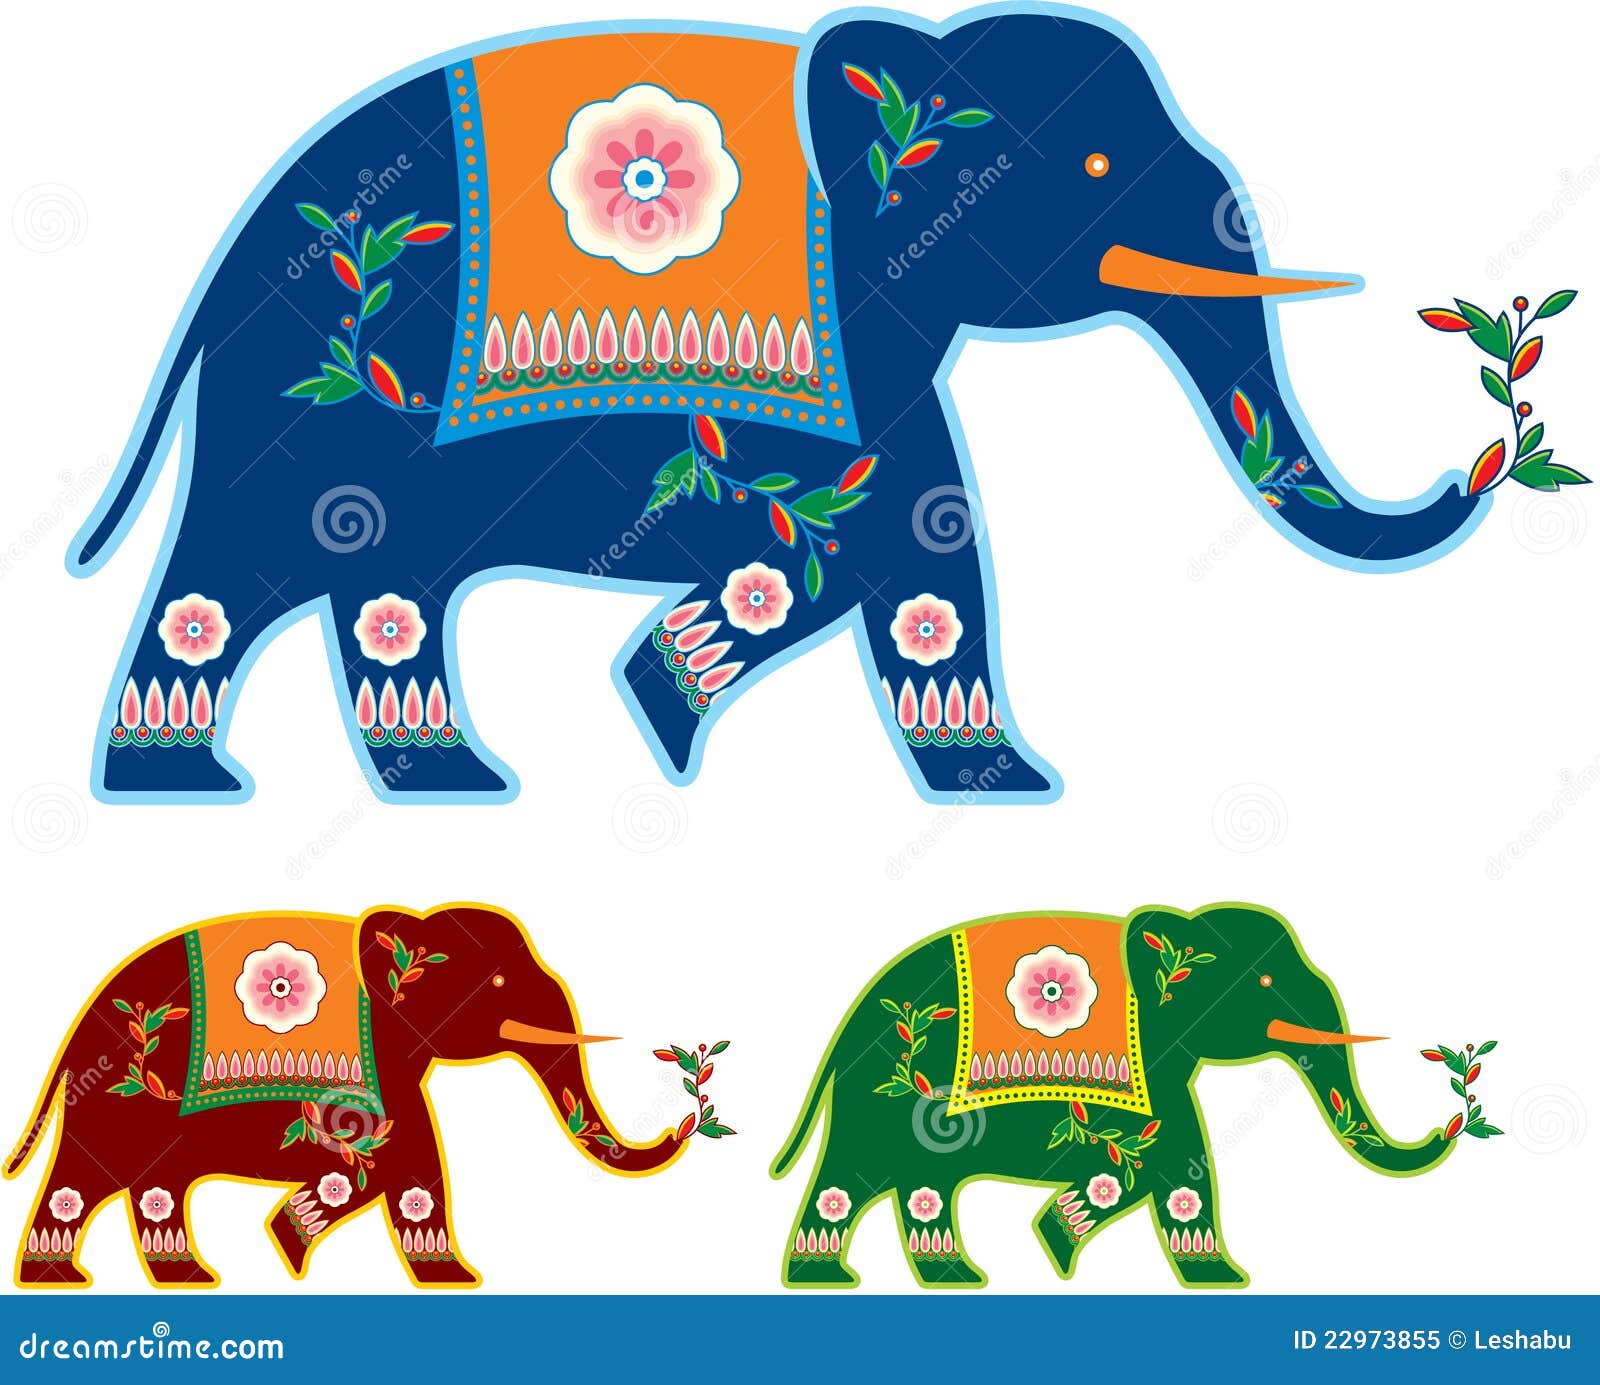 Indian Decorated Elephant Royalty Free Stock Photo - Image ...